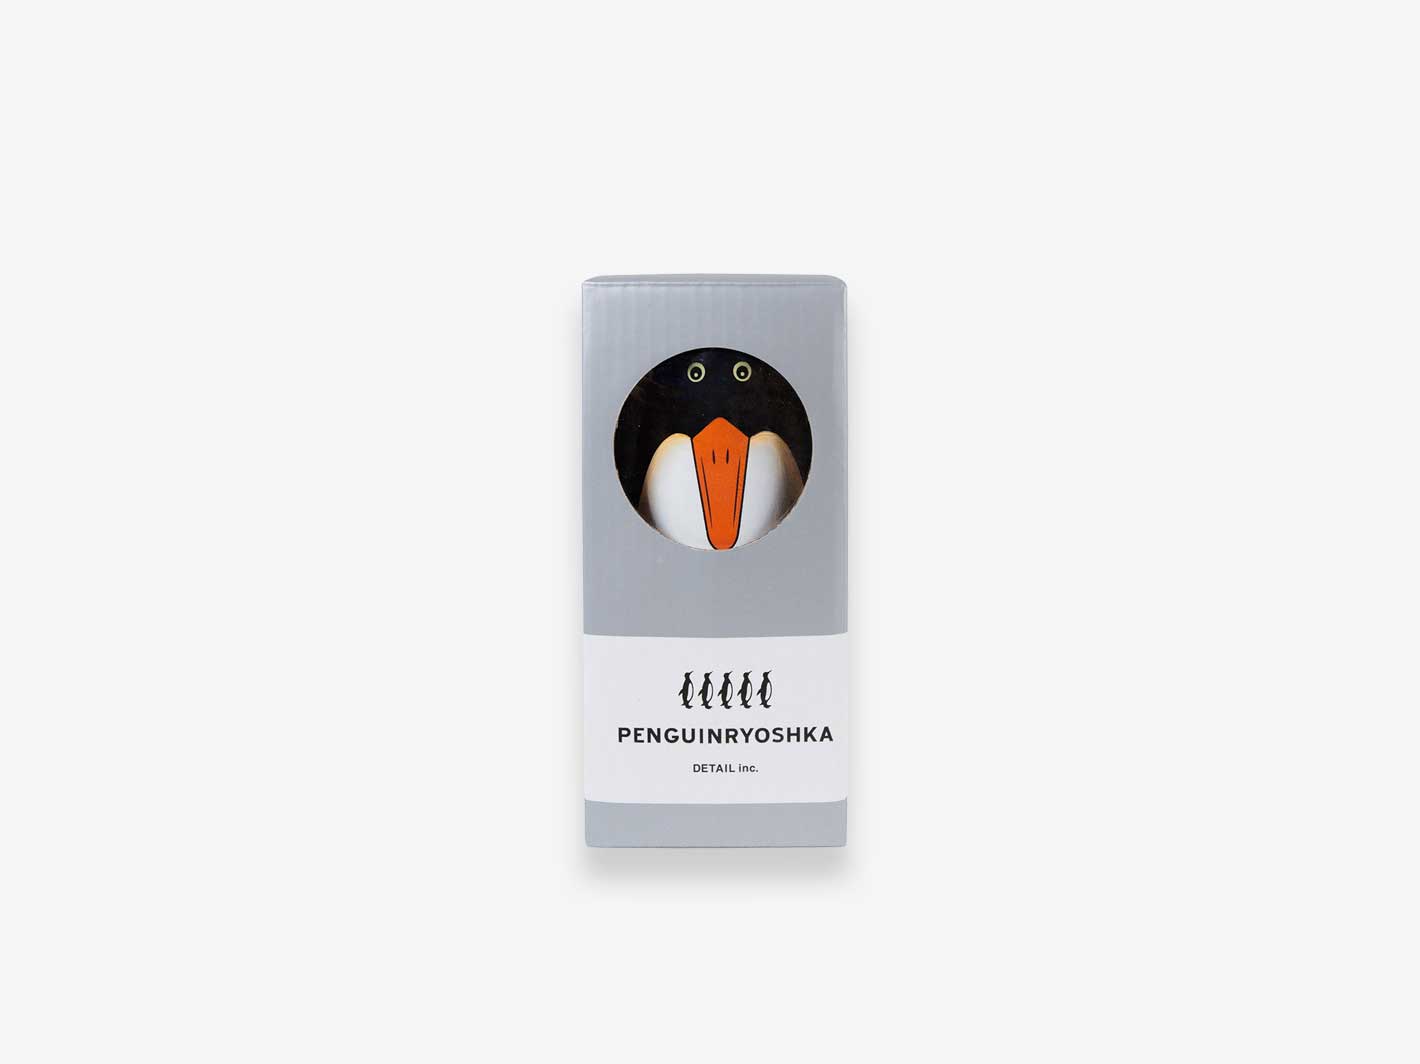 Penguin Ryoshka